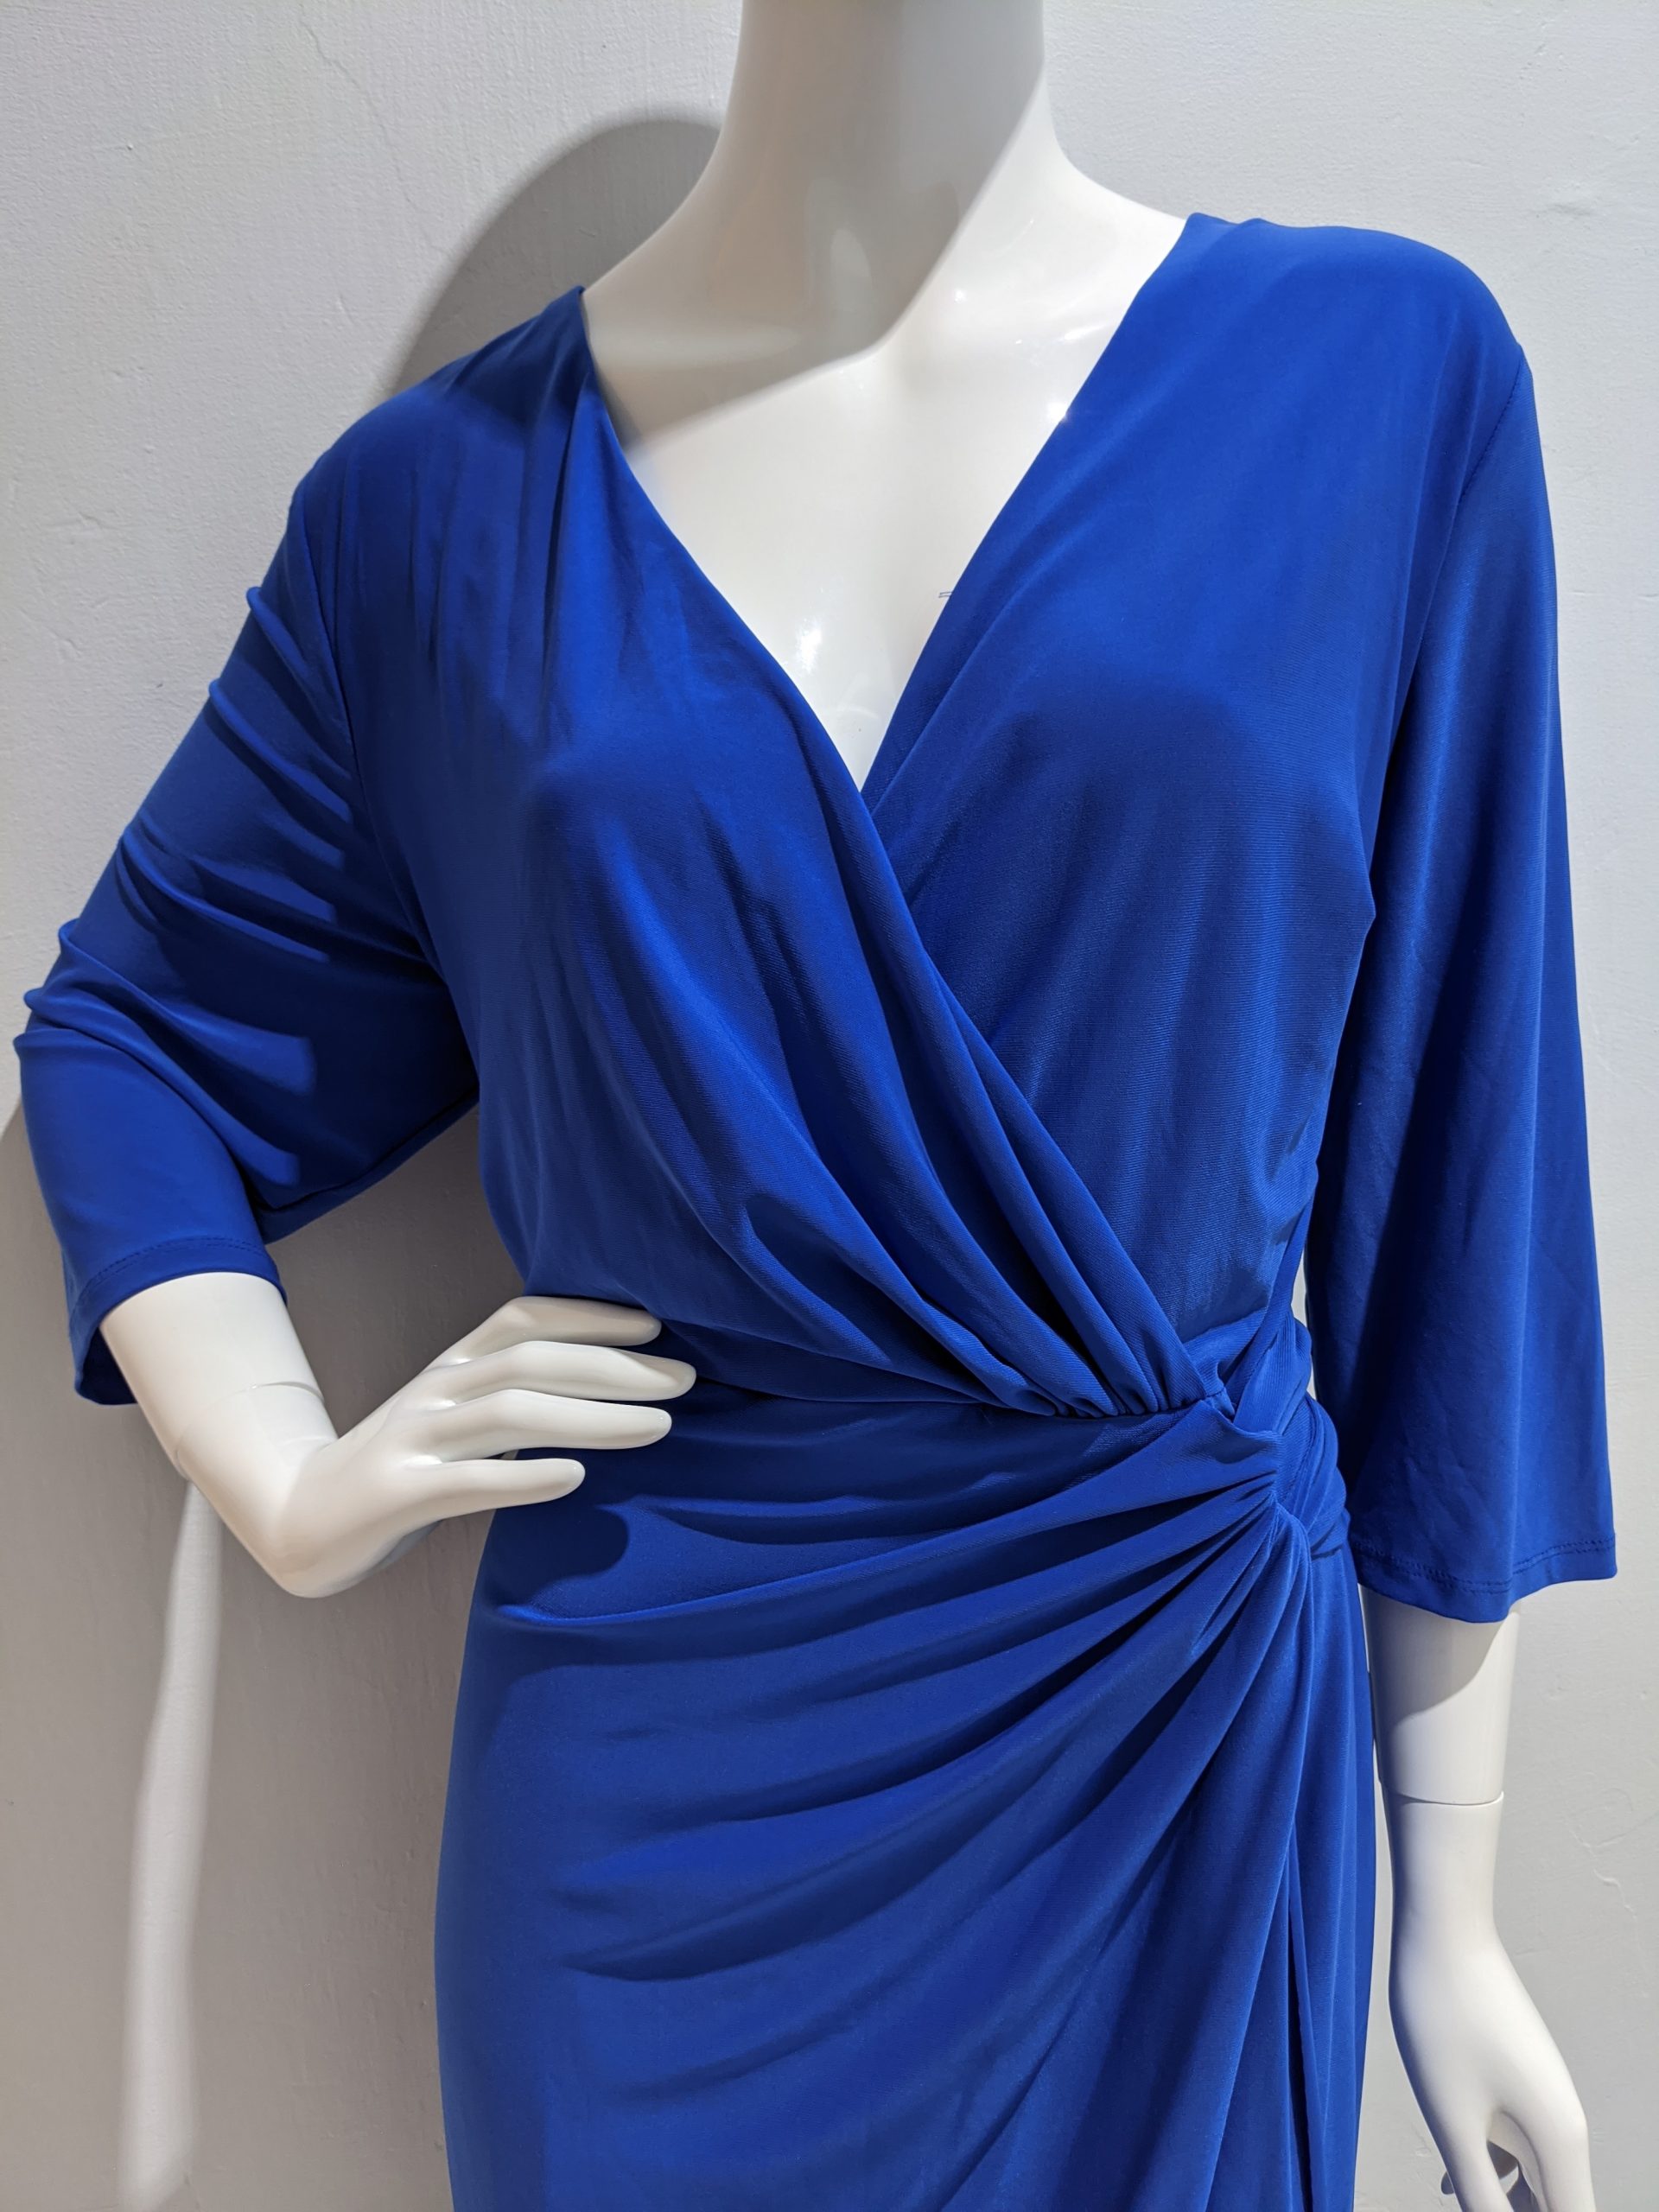 Ralph Lauren electric blue sheets dress | Listittt.com